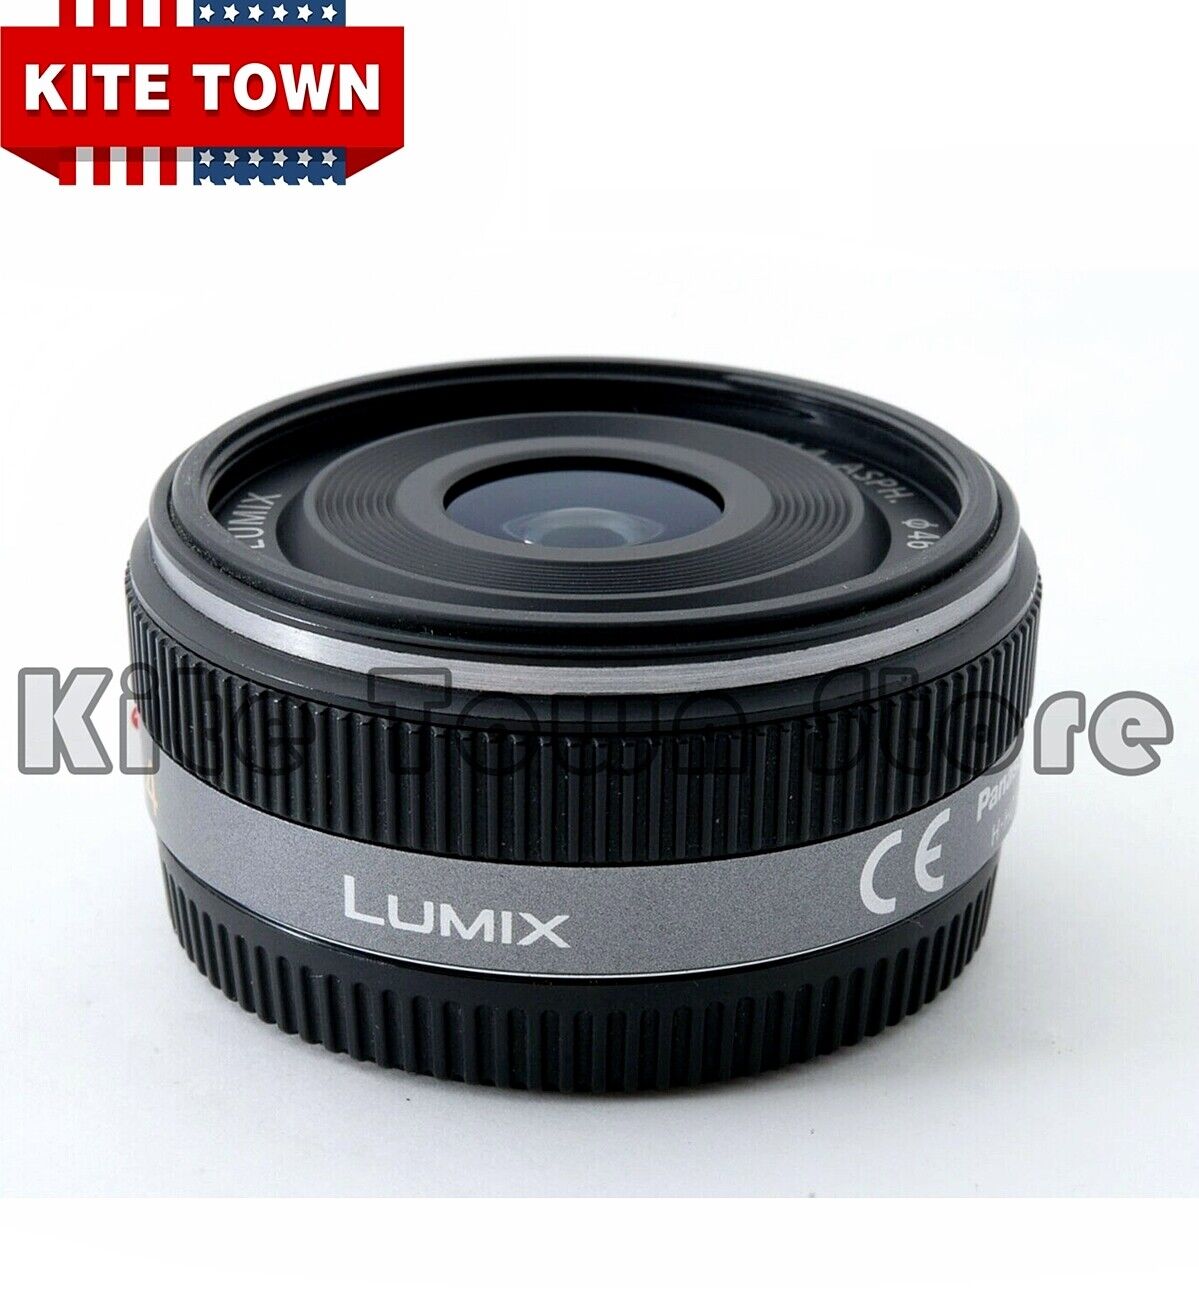 Panasonic Lumix G 14mm f2.5 ASPH Autofocus Lens Silver H-H014 W/Filters -  MINT